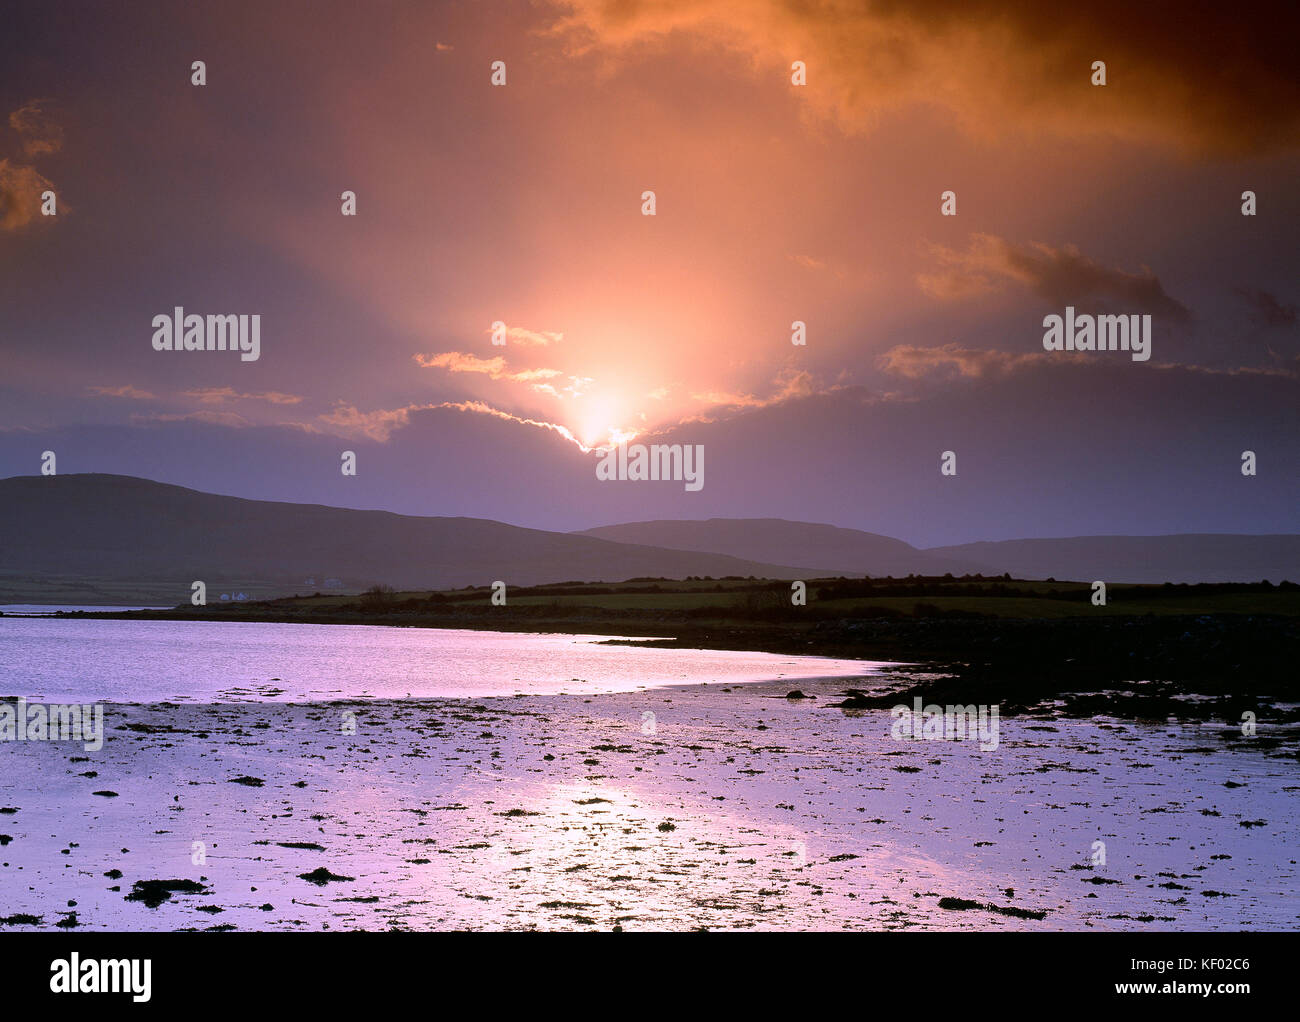 Ireland. West coast at sunrise. Stock Photo